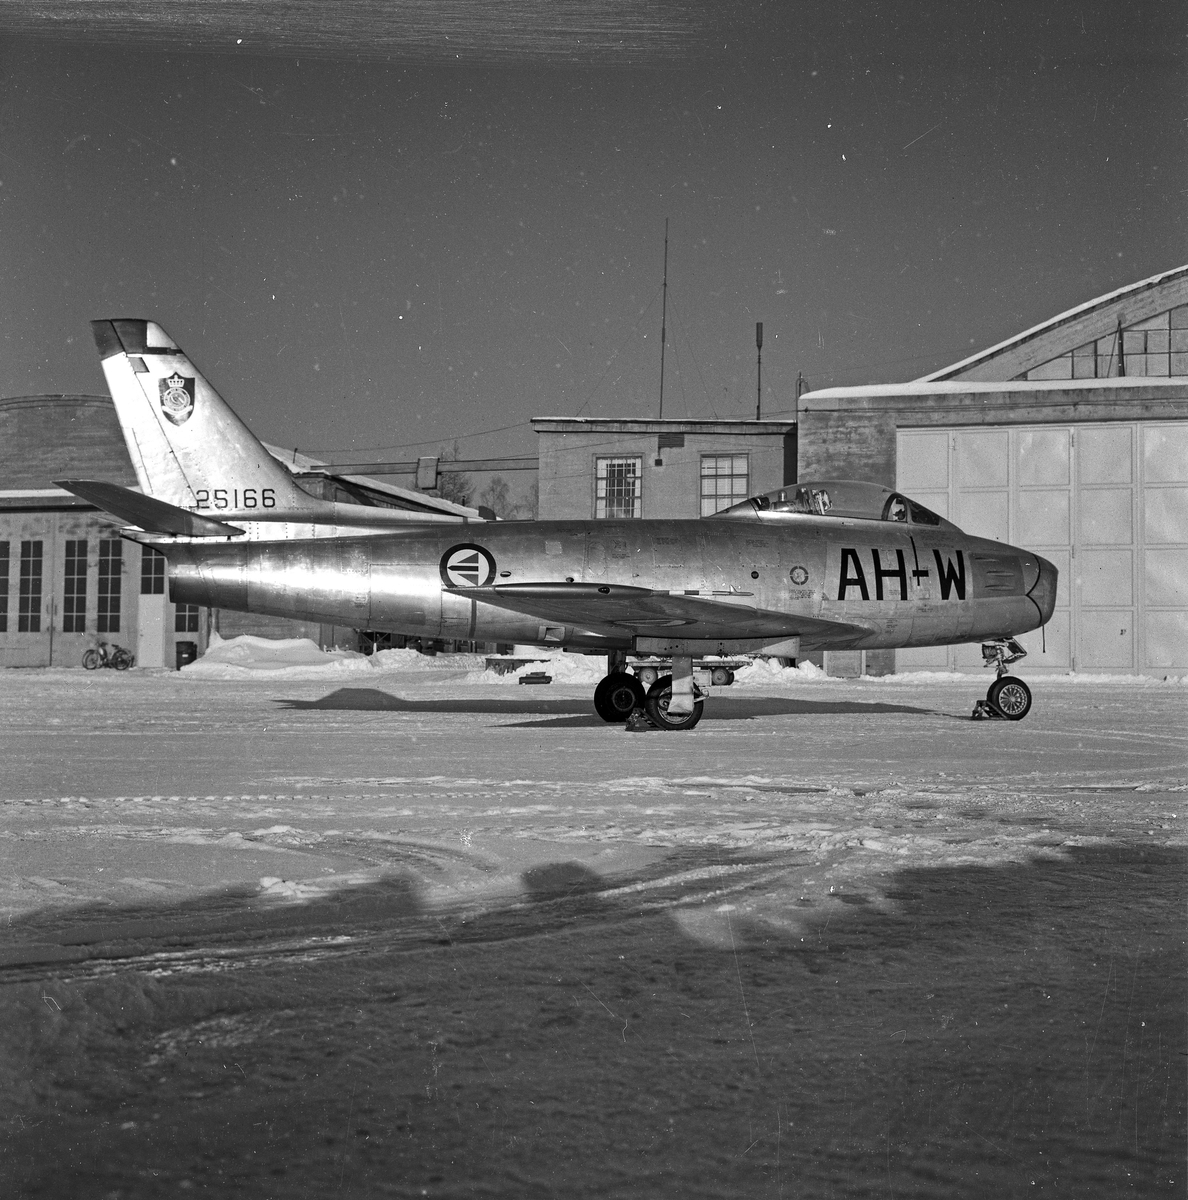  North American F-86F Sabre, litt skrått bakfra foran hangarer.